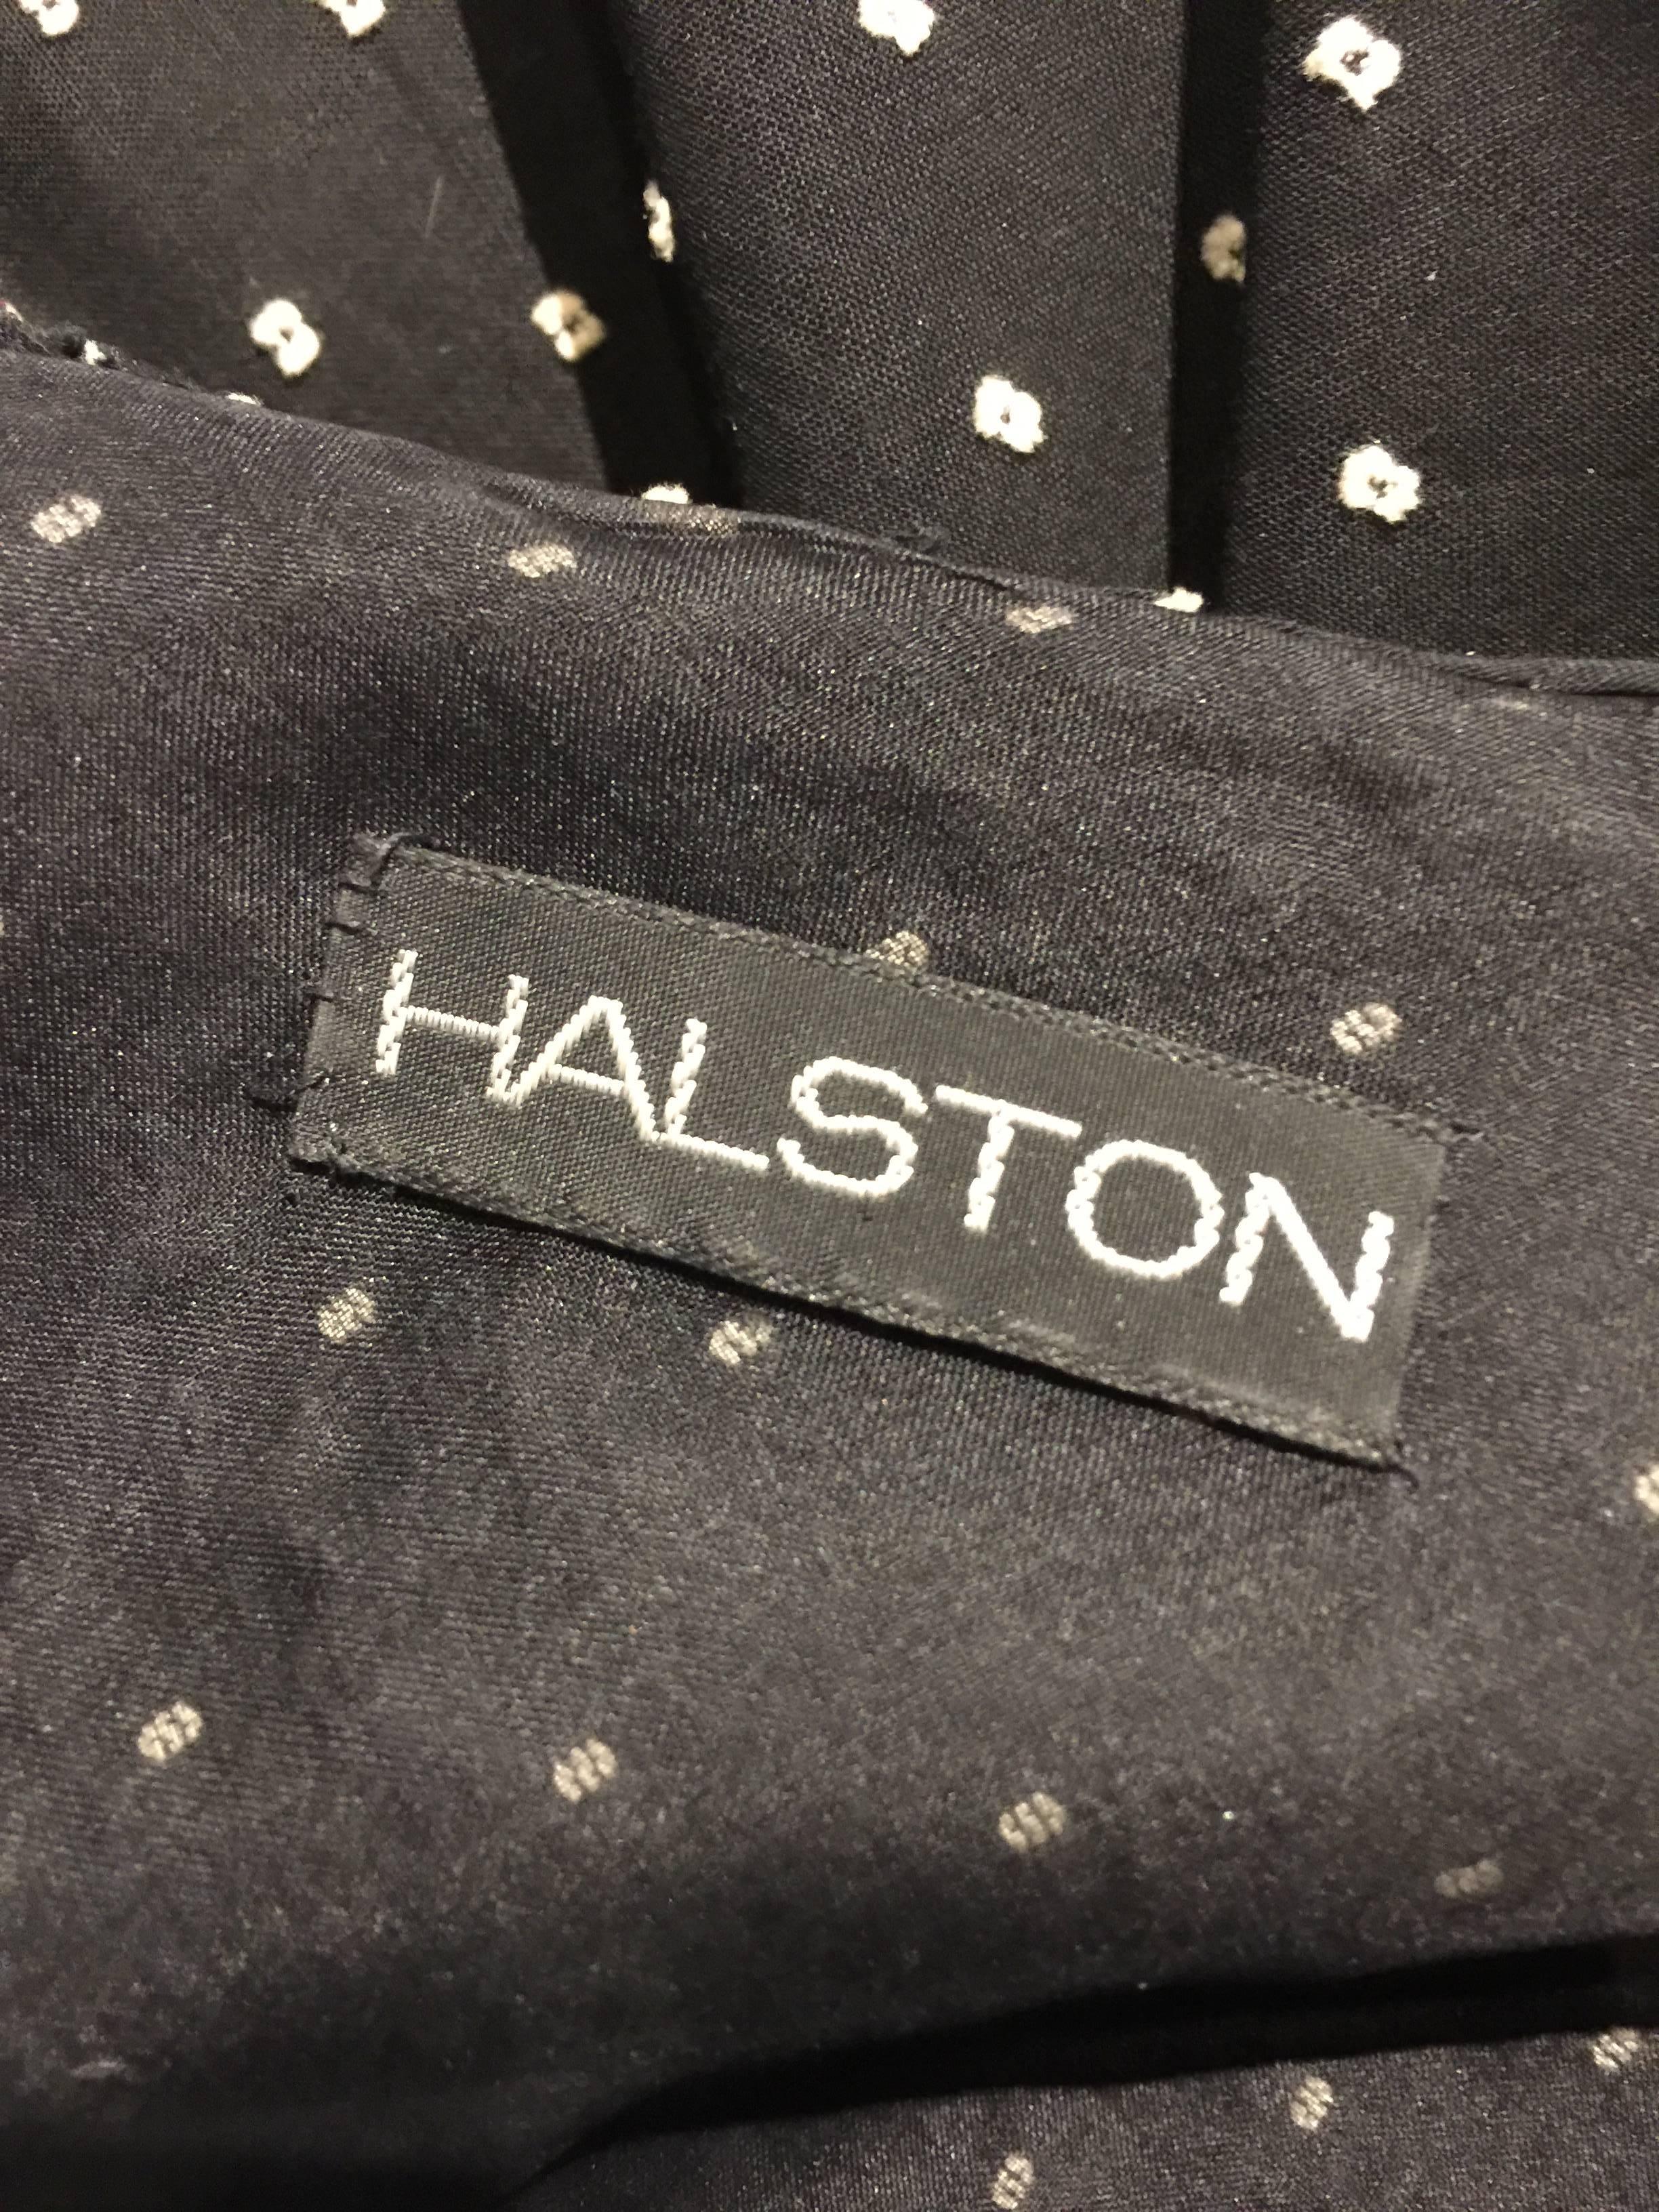 Women's 1970s Halston Cotton Voile Woven Dot Wrap-Around Wrap Maxi Dress w Ruffle